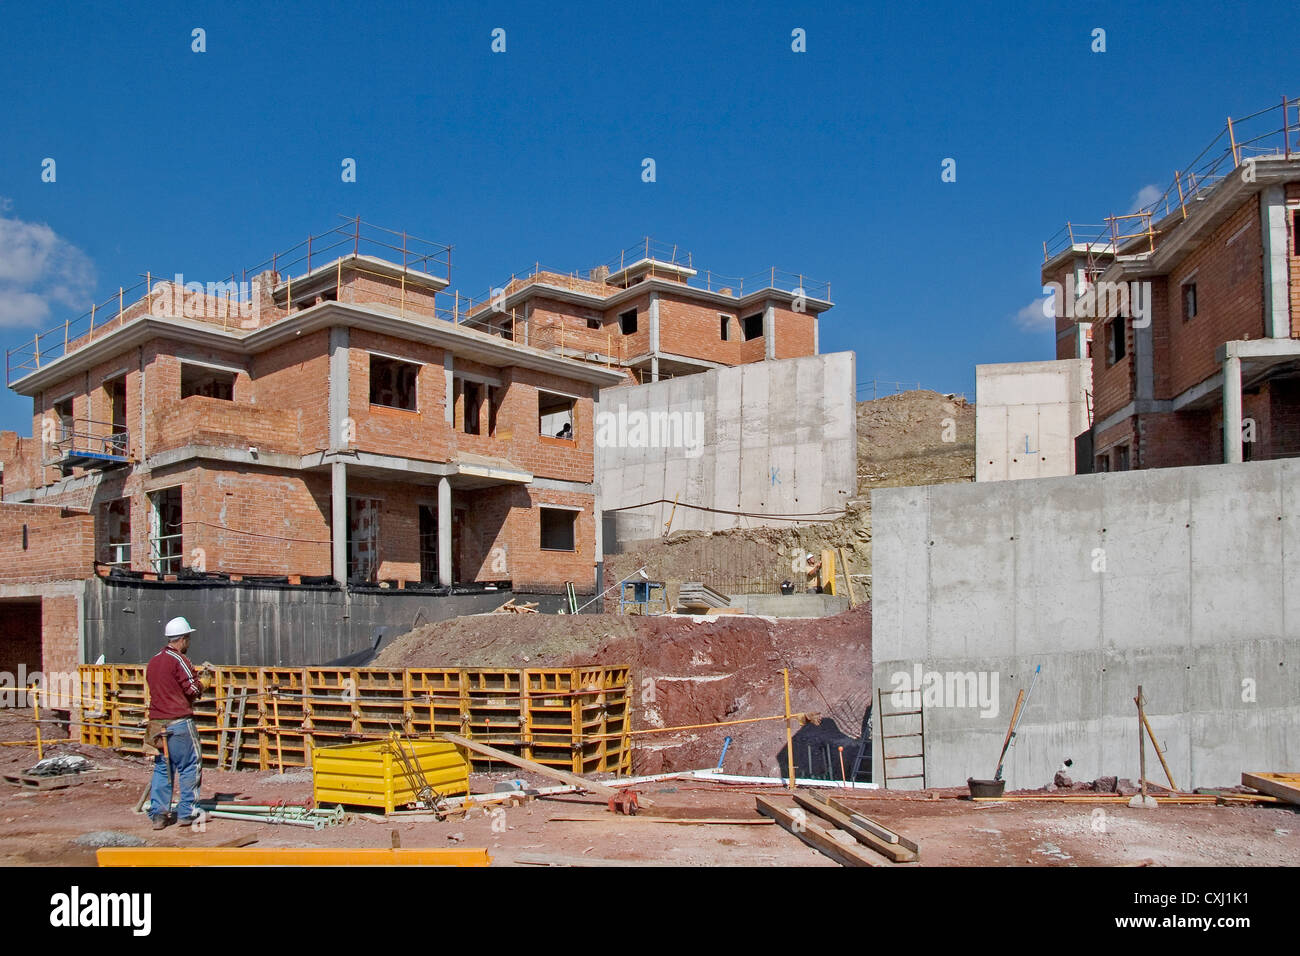 Bau Website Costa del Sol Malaga Andalusien Spanien Obra de Construccion de la Costa del Sol Malaga Andalusien españa Stockfoto